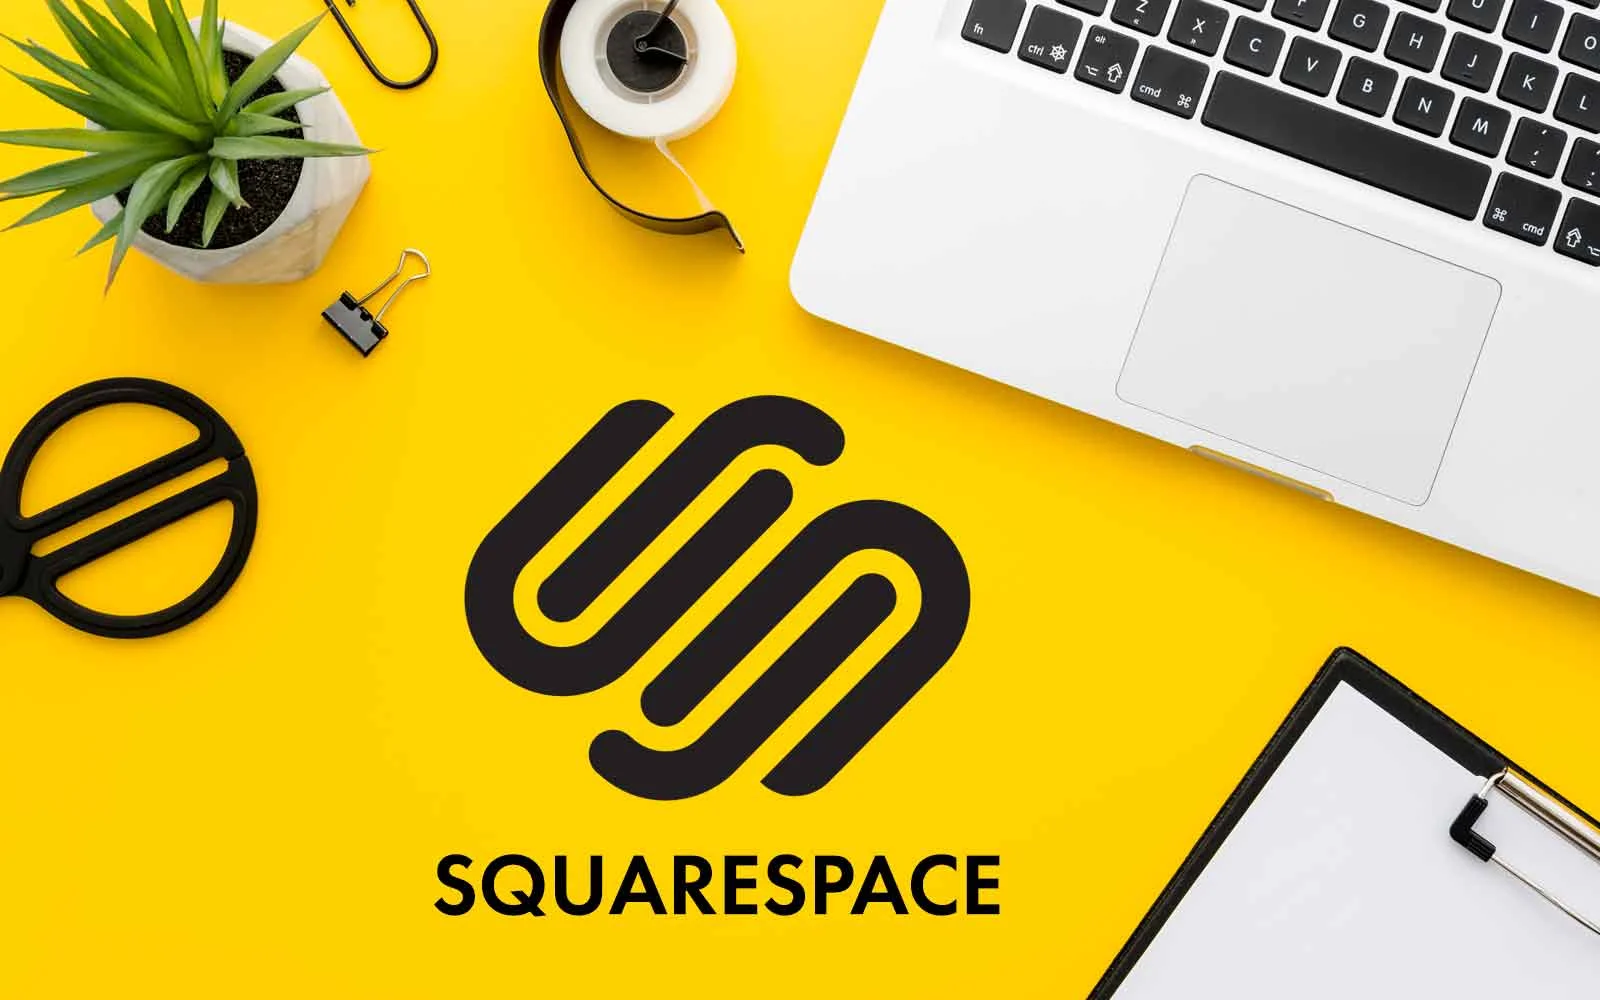 Squarespace, business, website hosting